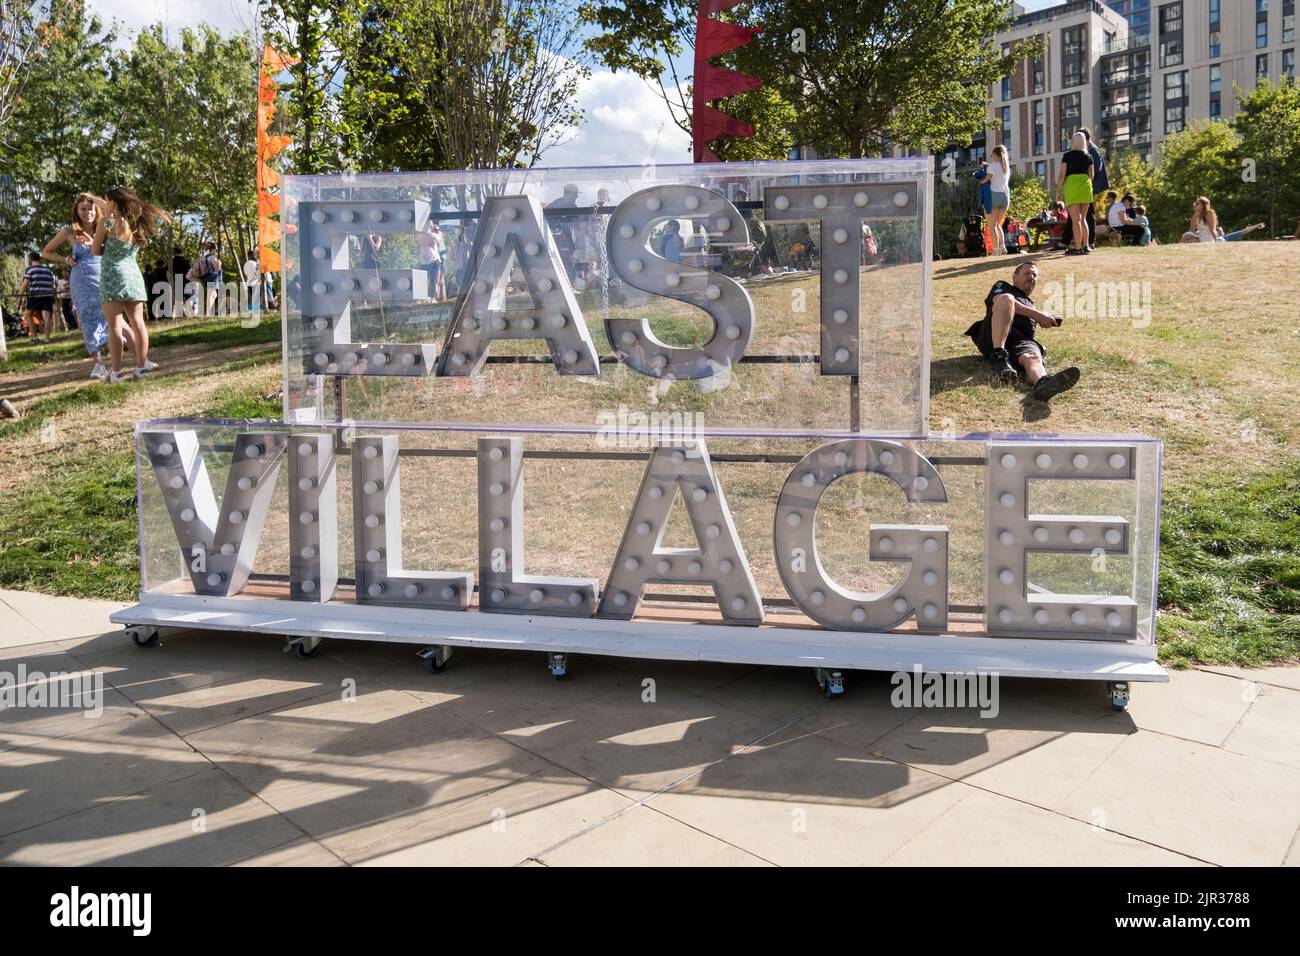 East Village Sign (Londres) en el parque durante el Fete de Verano de E20 celebrando el 10 aniversario de las Olimpiadas de Londres 2012. Foto de stock